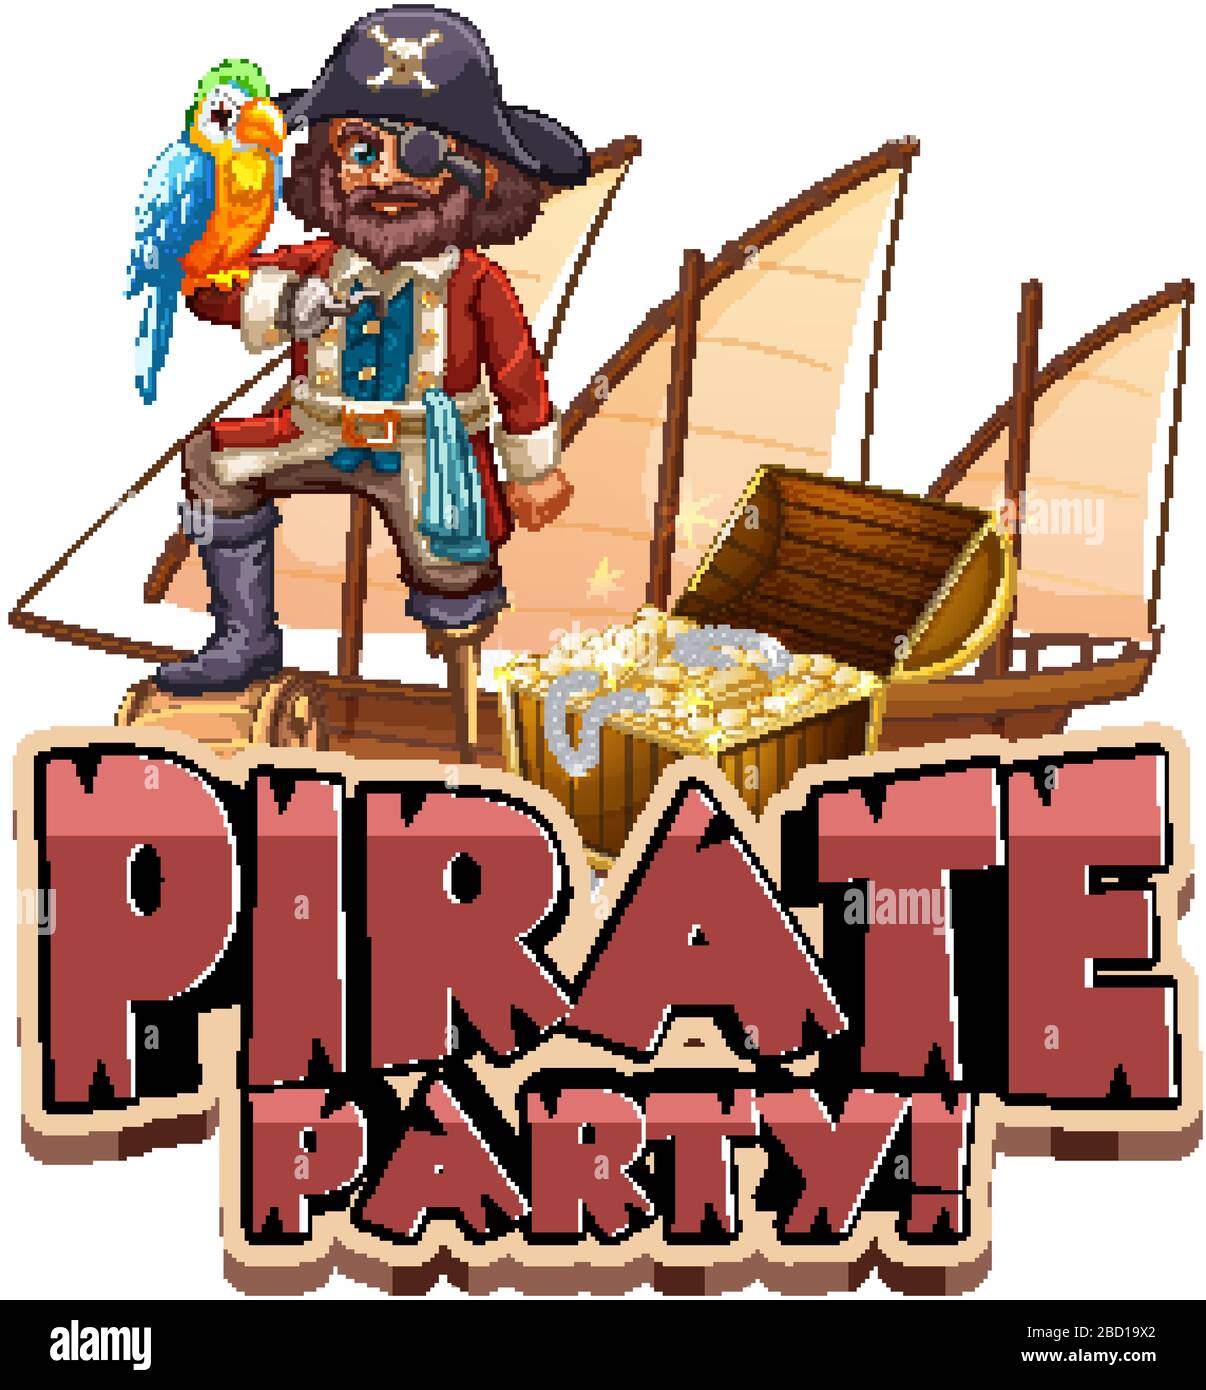 Police de caractères pour le mot pirate party avec pirate et parrot illustration d'animal de compagnie Illustration de Vecteur